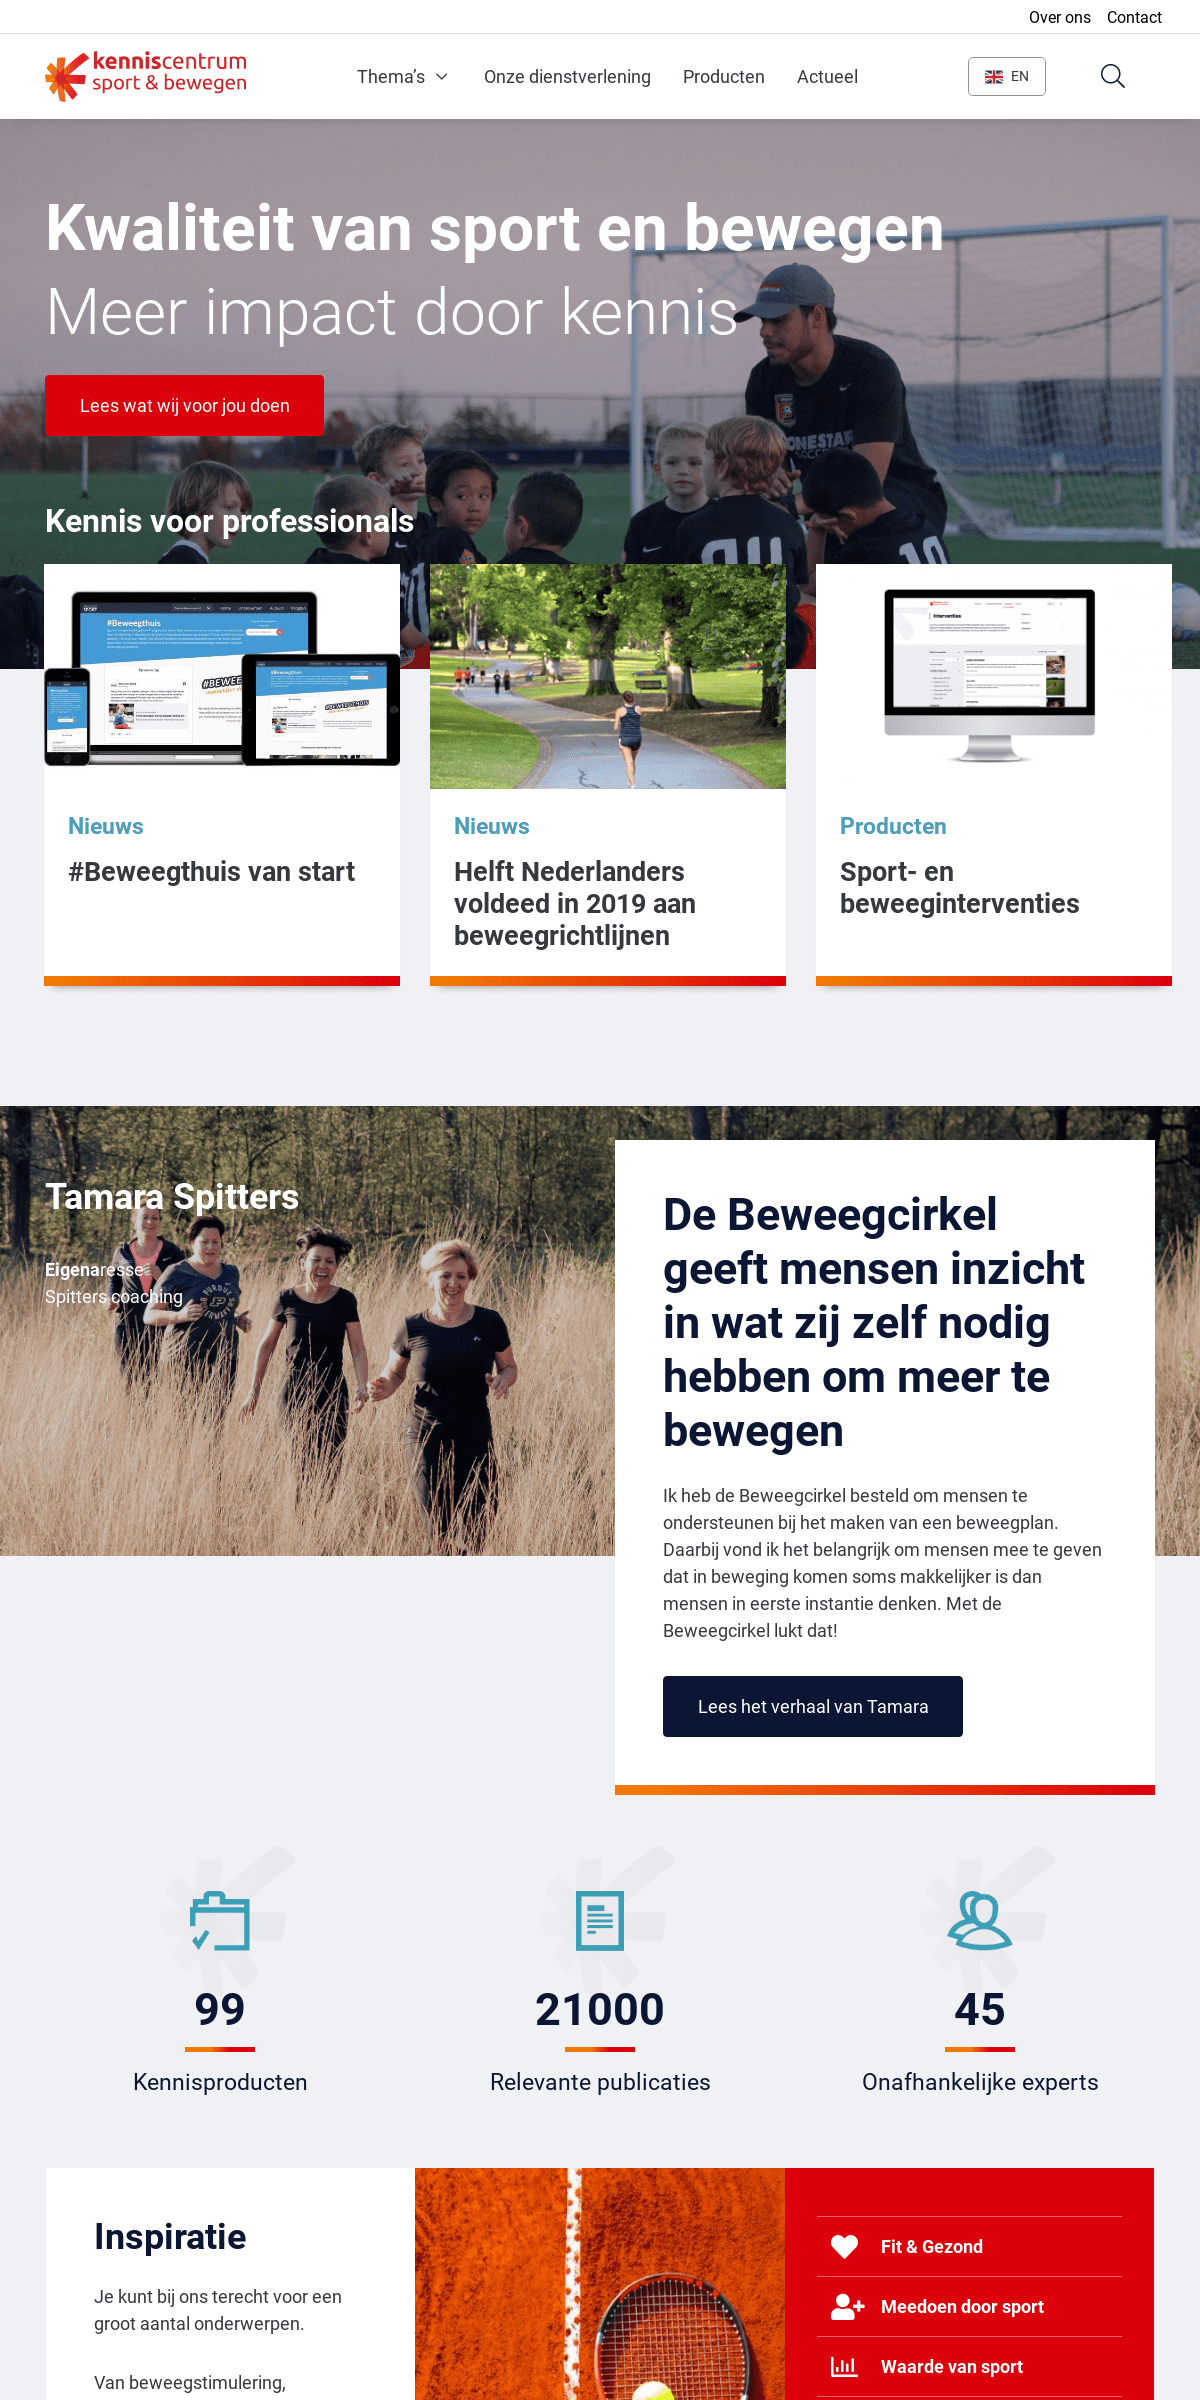 A complete backup of kenniscentrumsport.nl